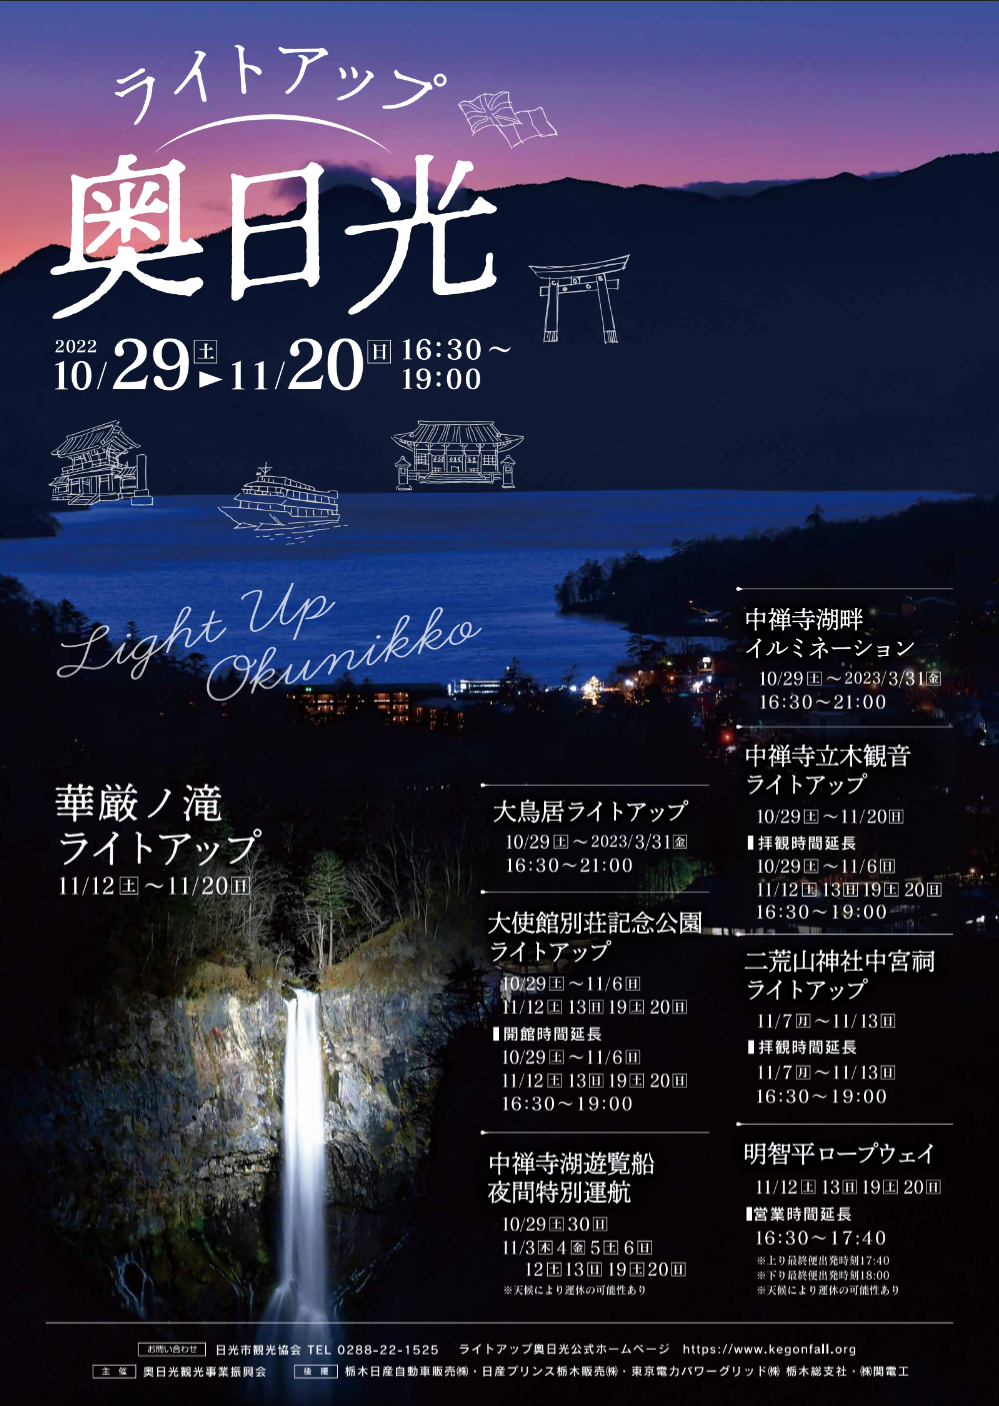 月にもっとも近いところからアート観賞を！成田空港発着 
皆既月食アートツアーを2022年11月8日(火)に開催